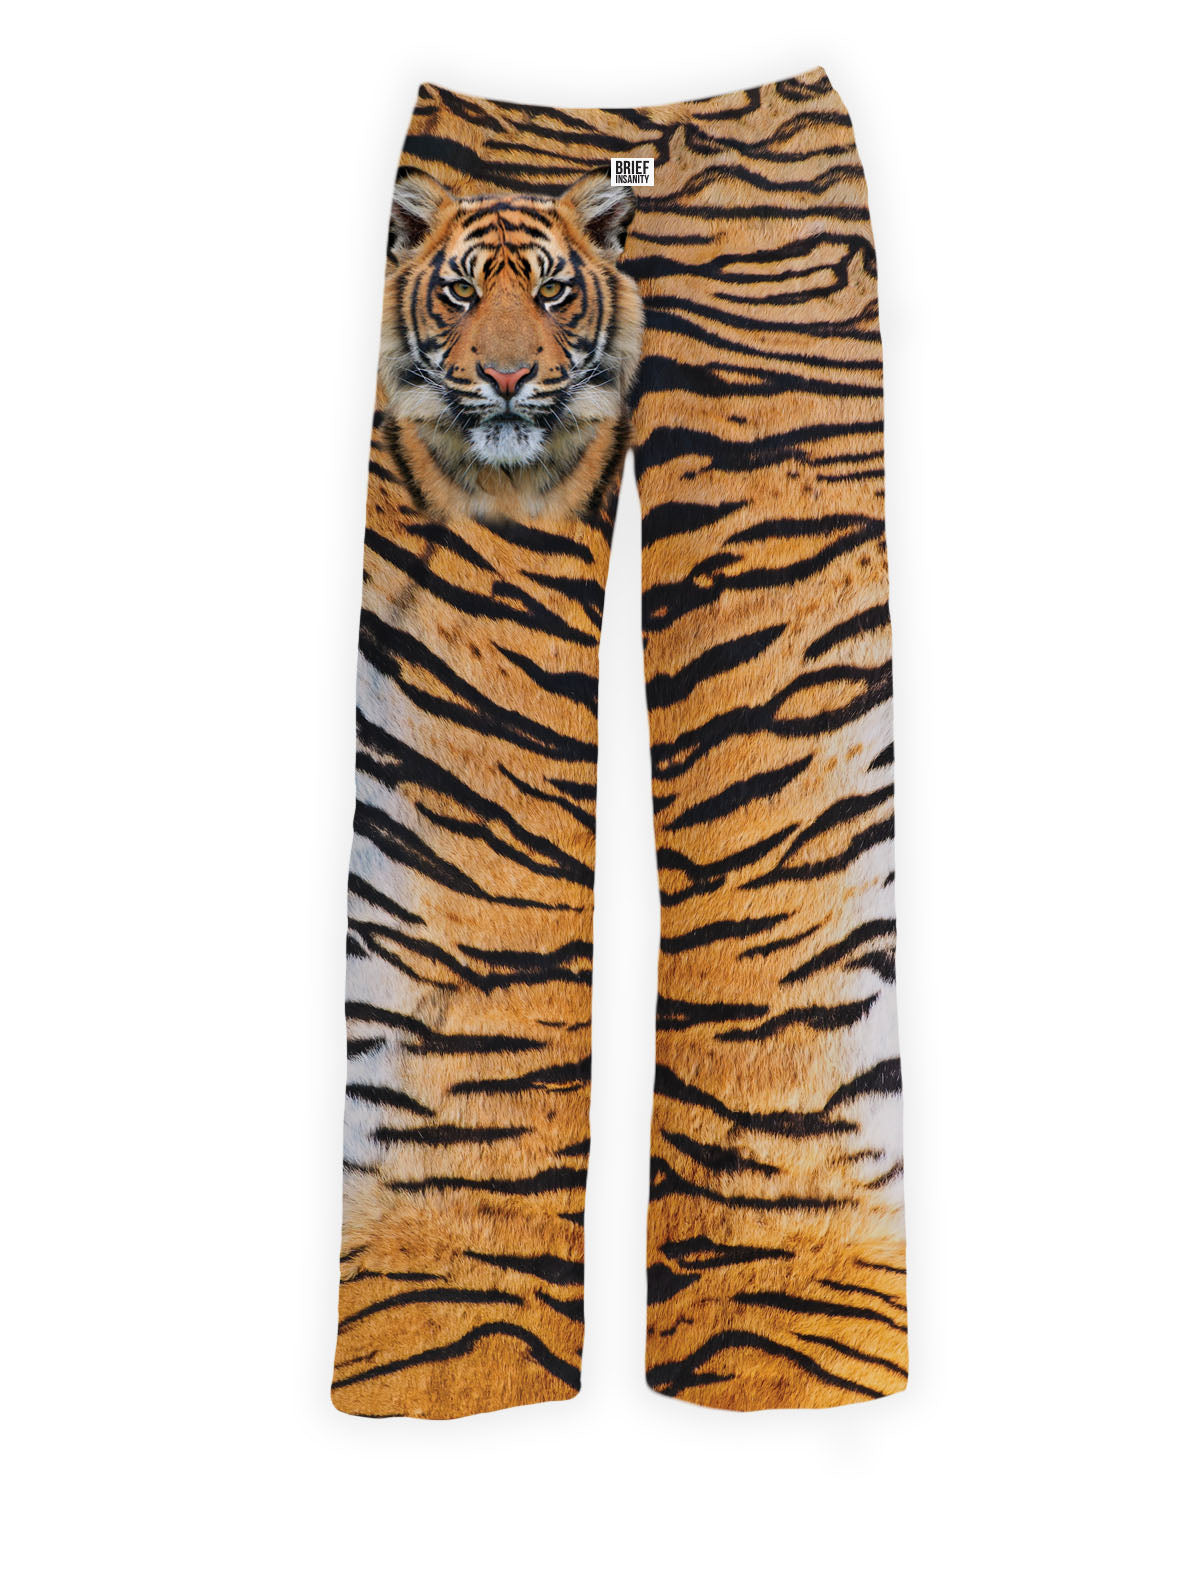 BRIEF INSANITY Tiger Pajama Pants